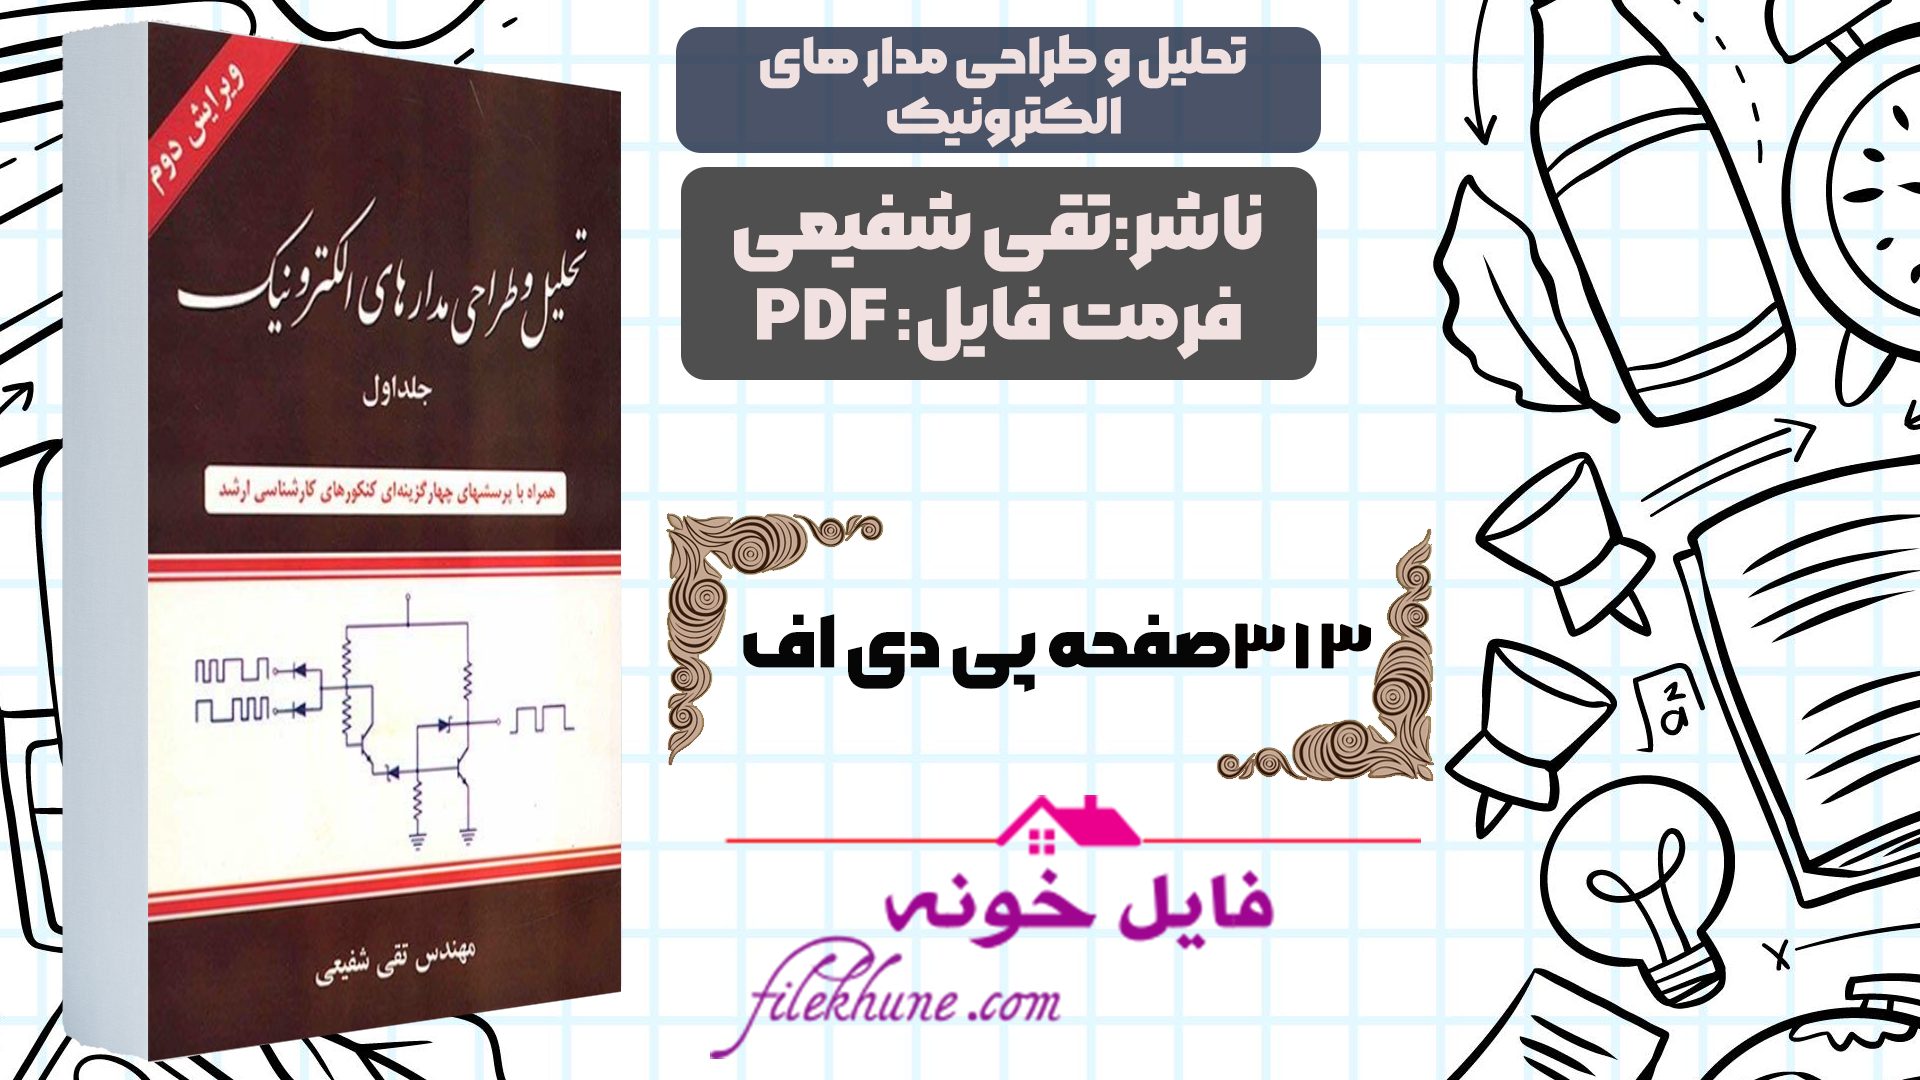 دانلود کتاب تحلیل وطداحی مدار های الکترونیک جلد 1 تقی شفیعی PDF - فایل خونه 